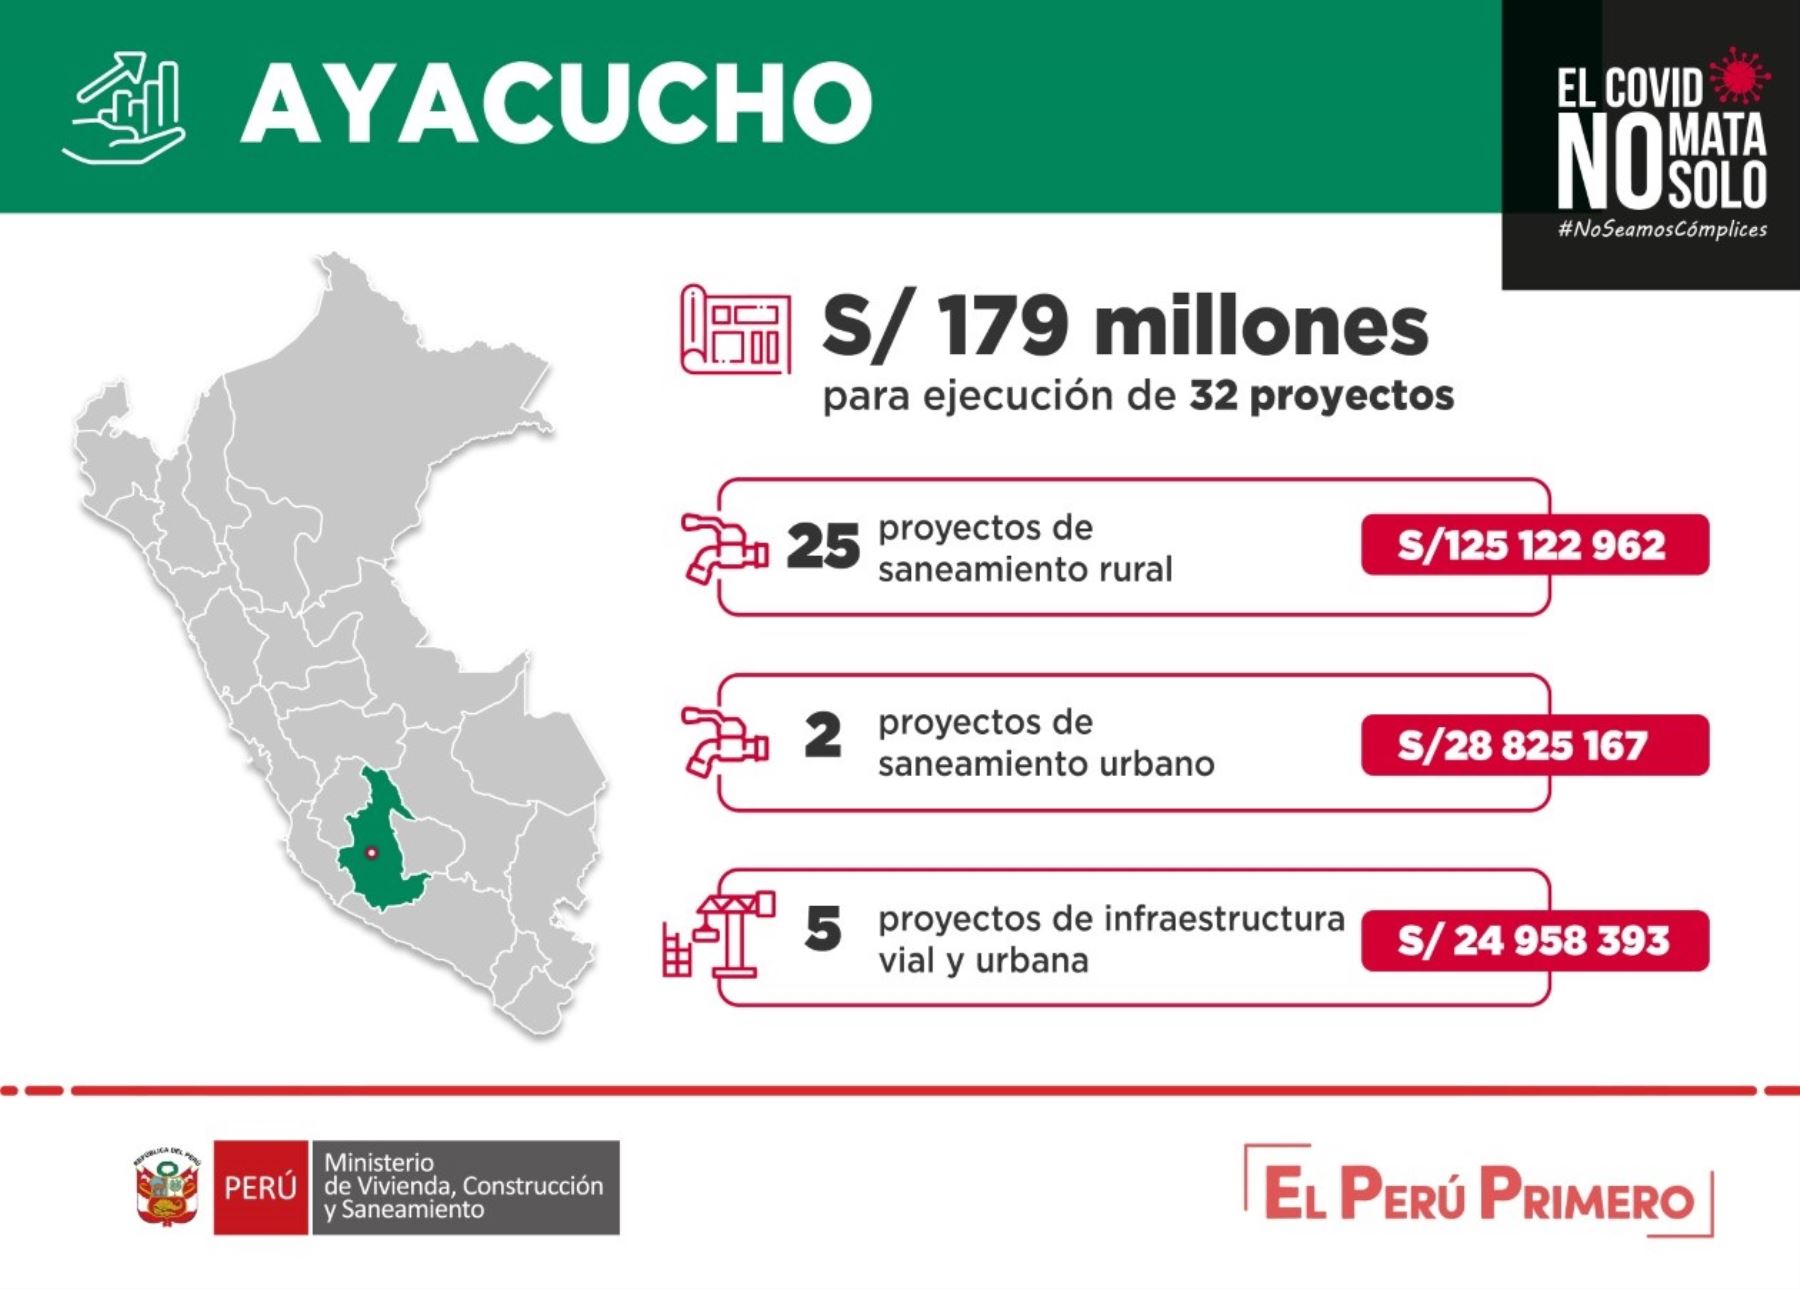 Ayacucho recibirá cerca de S/ 179 millones para reactivar economía y ejecutar proyectos de agua y saneamiento, y obras de infraestructura urbana (pistas y veredas).